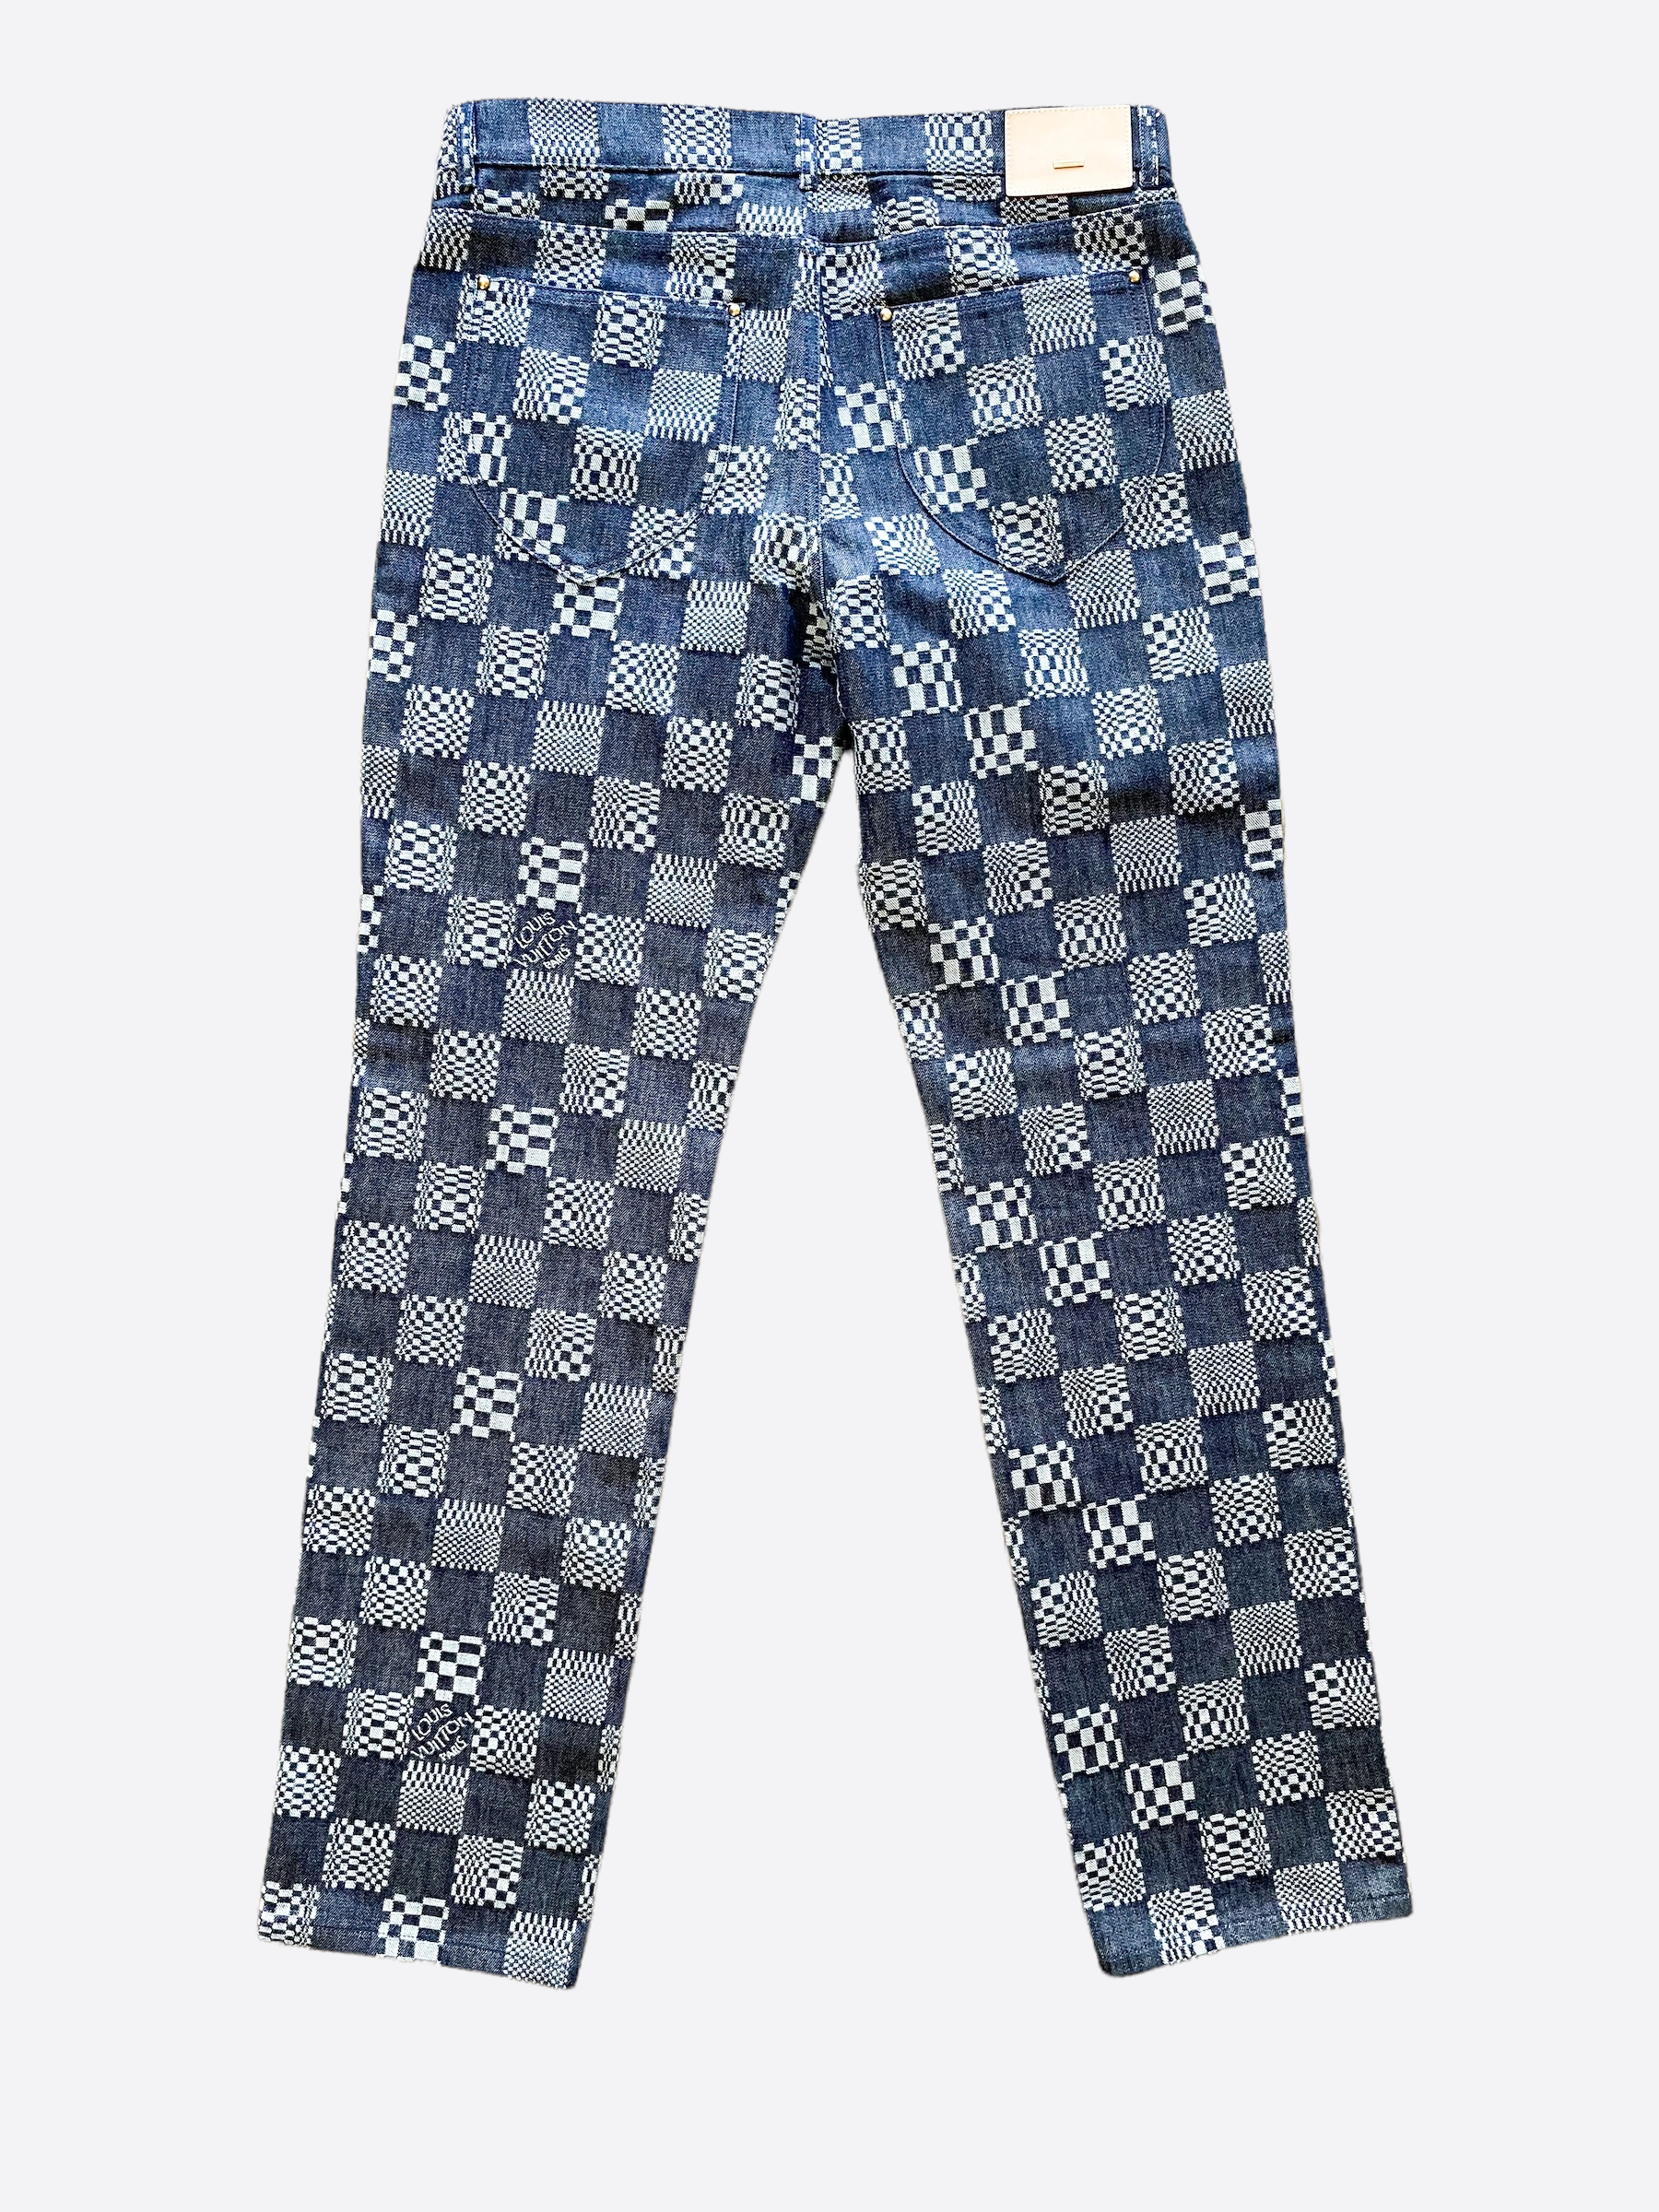 Louis Vuitton Damier Print Jeans